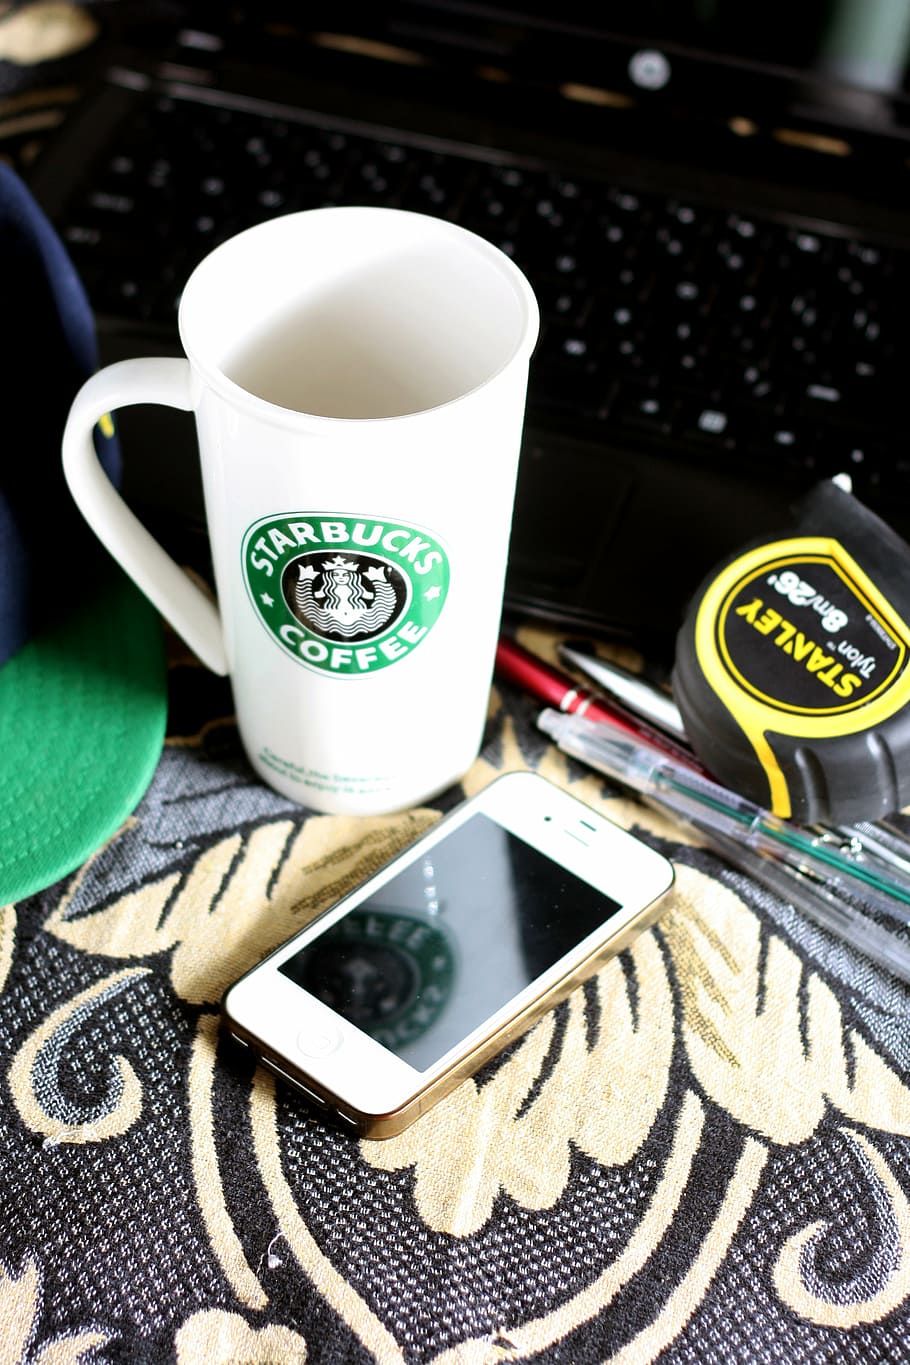 blanco, verde, taza de Starbucks, mesa, iPhone, Starbucks, café, taza, tecnología, artilugios